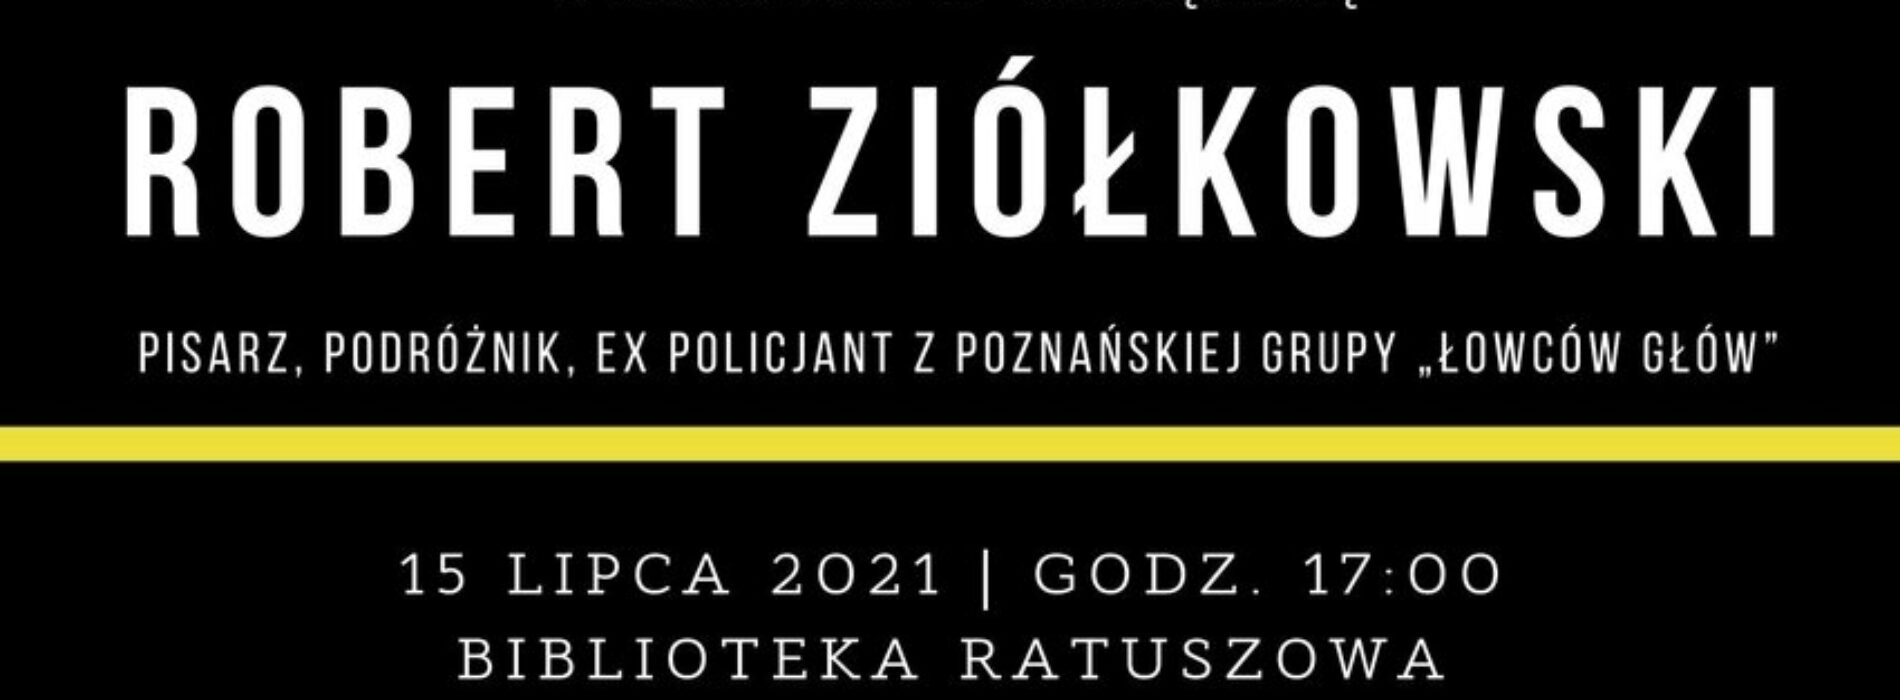 Robert Ziółkowski – spotkanie z pisarzem, ex policjantem z grupy ,,łowców głów”